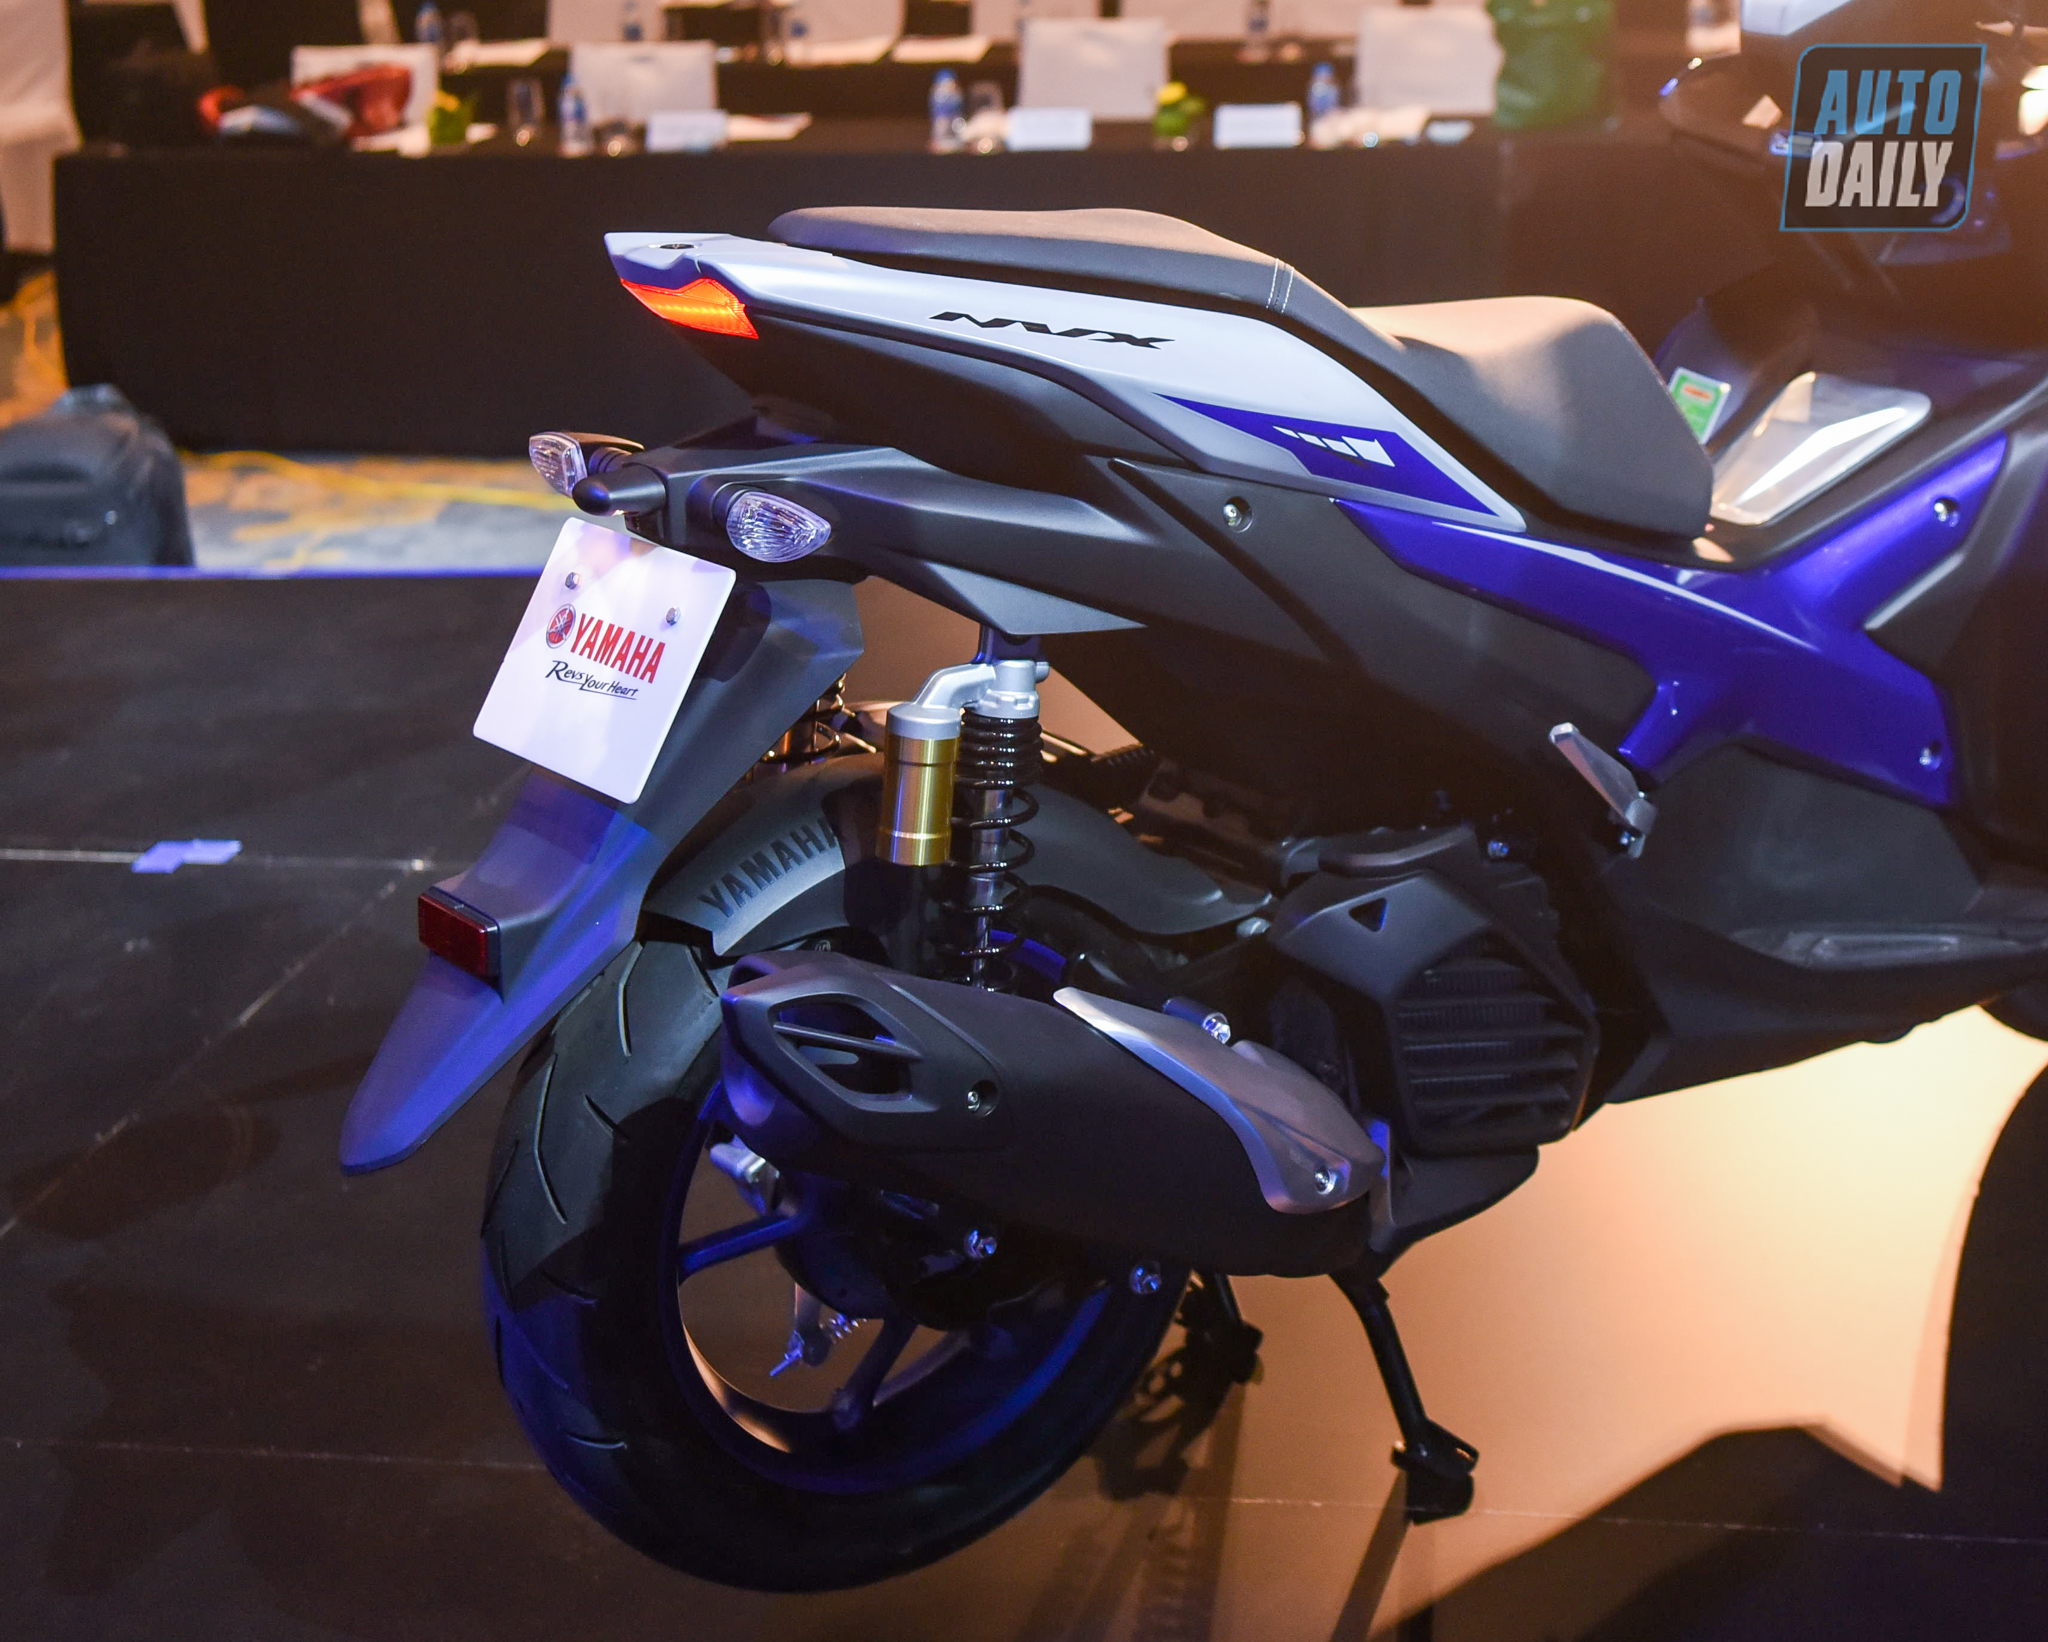 Chi tiết xe tay ga thể thao Yamaha NVX 155 2021 giá từ 53 triệu đồng yamaha-nvx-22.jpg